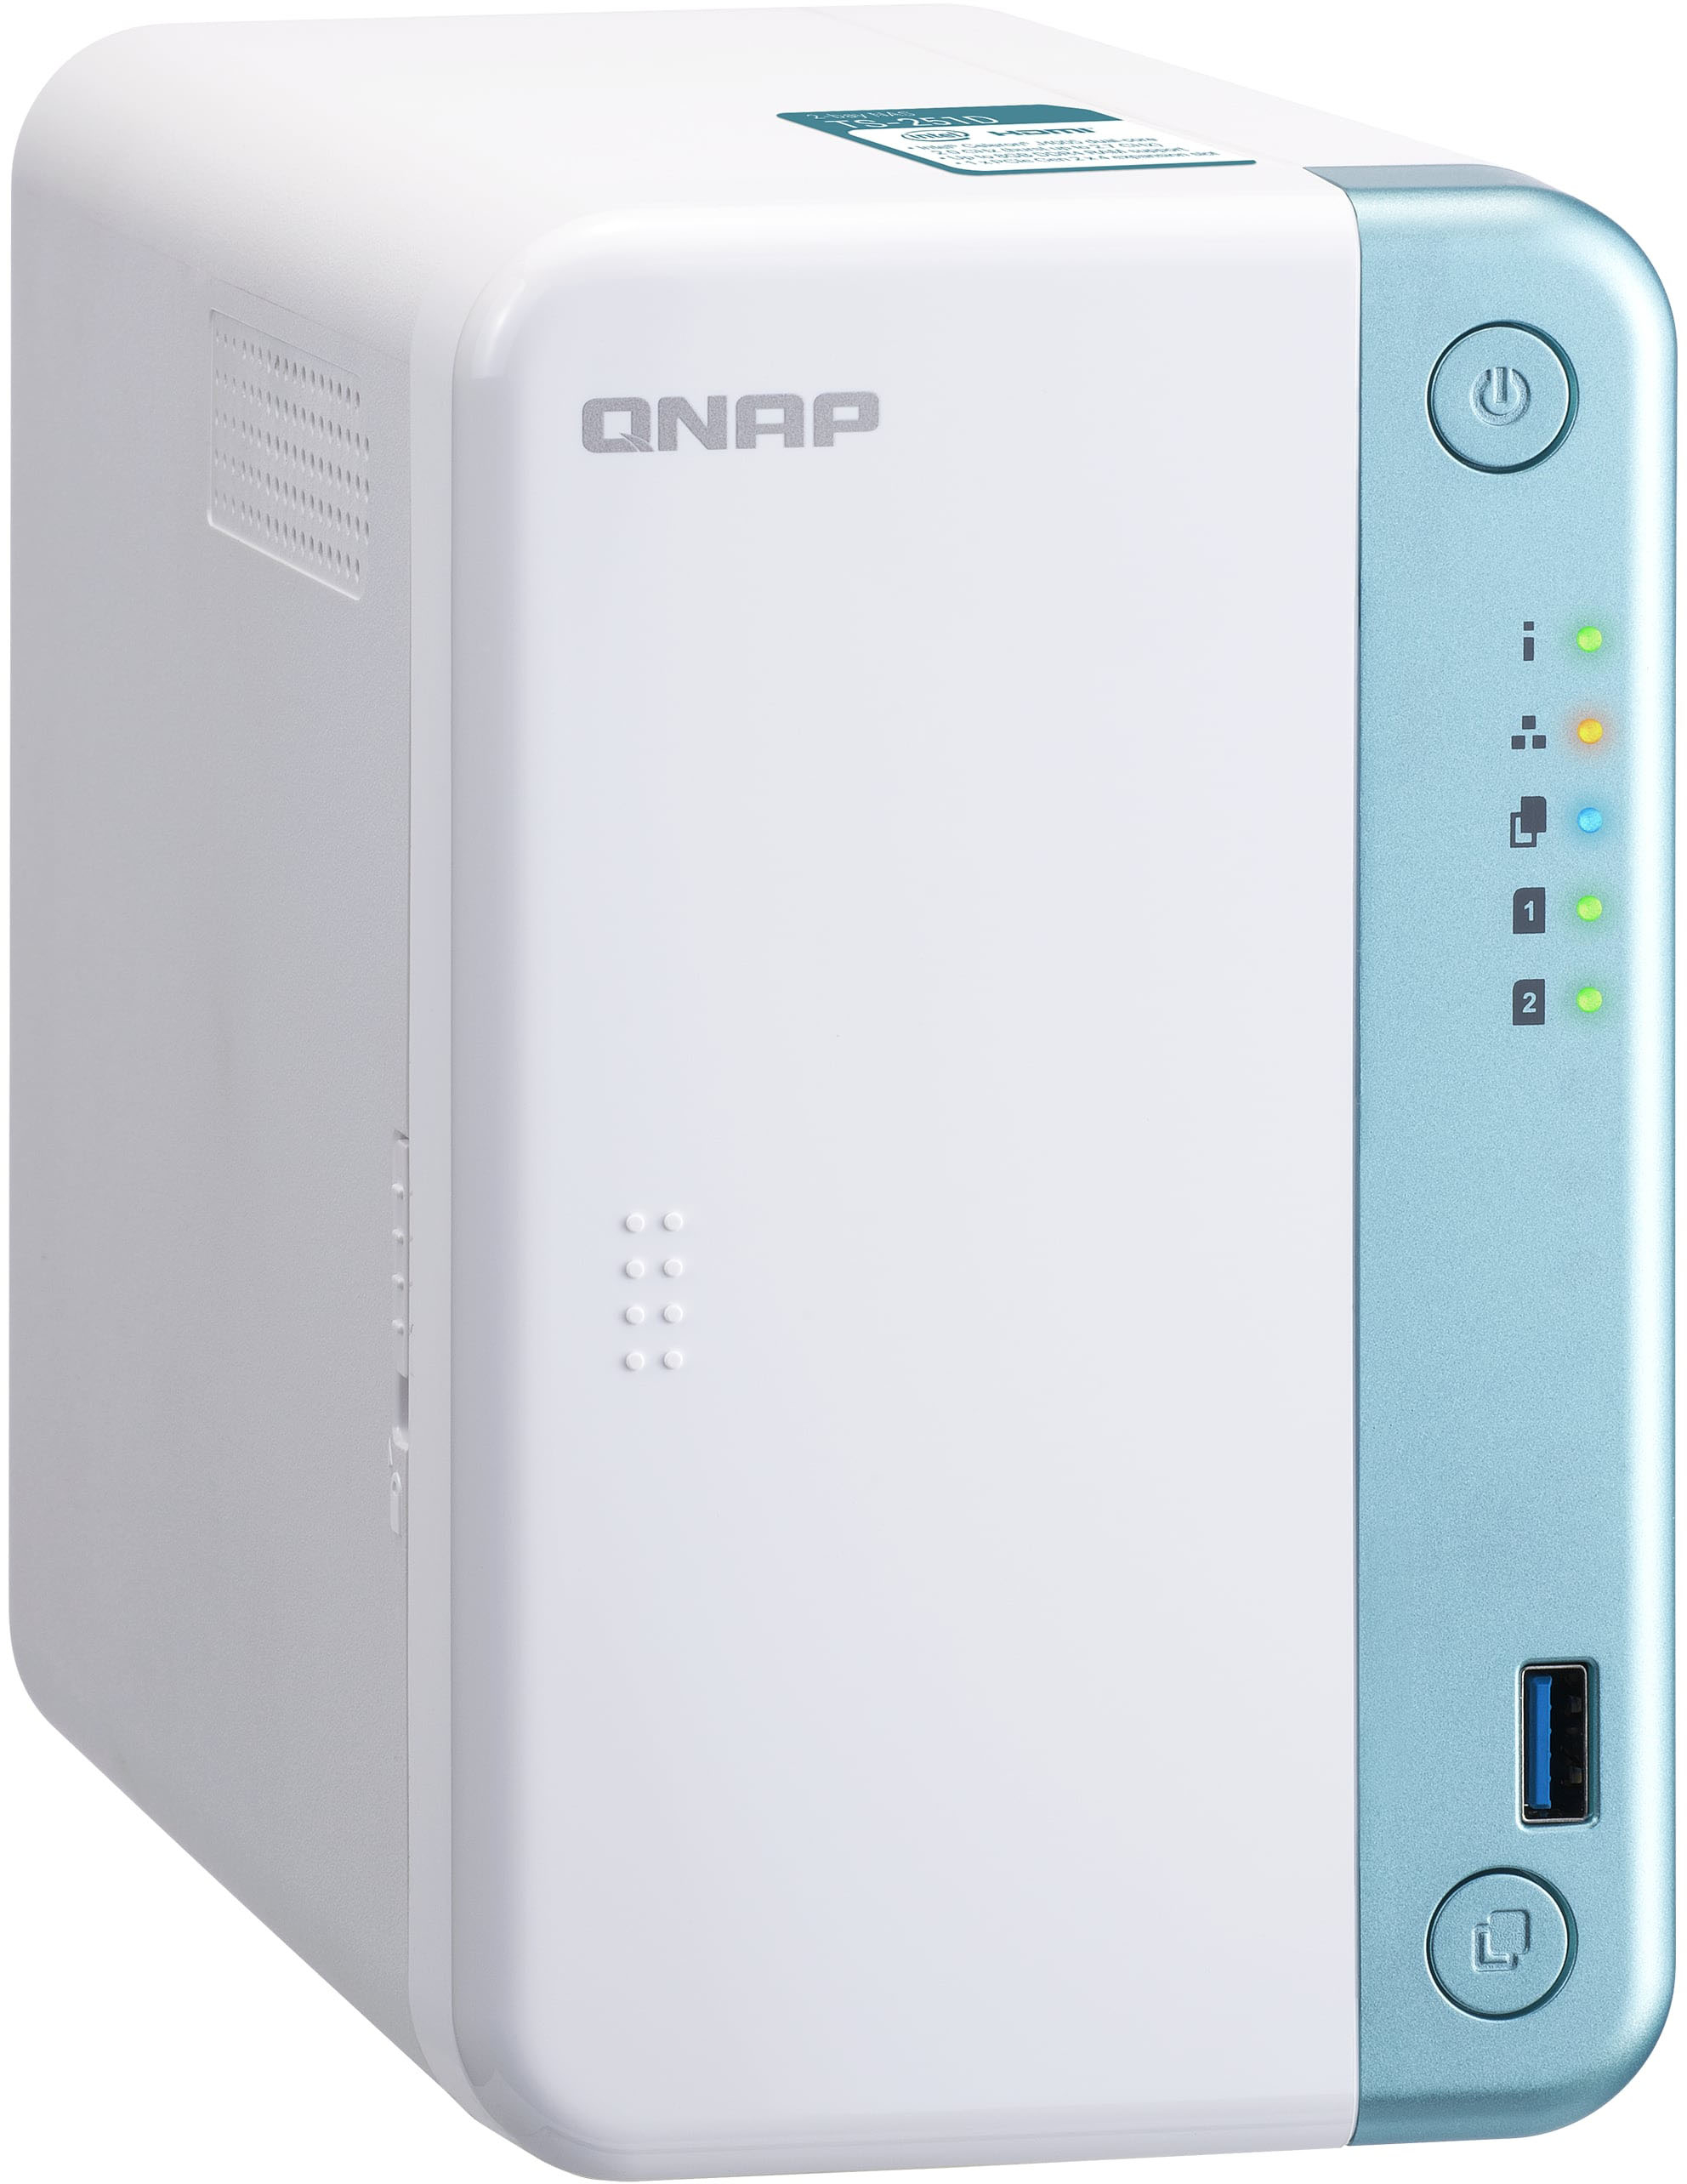 Left View: QNAP - TS-251D-4G 2-Bay, Intel Celeron Apollo Lake J3355, 4GB DDR3L RAM, External Network Attached Storage (NAS) - White